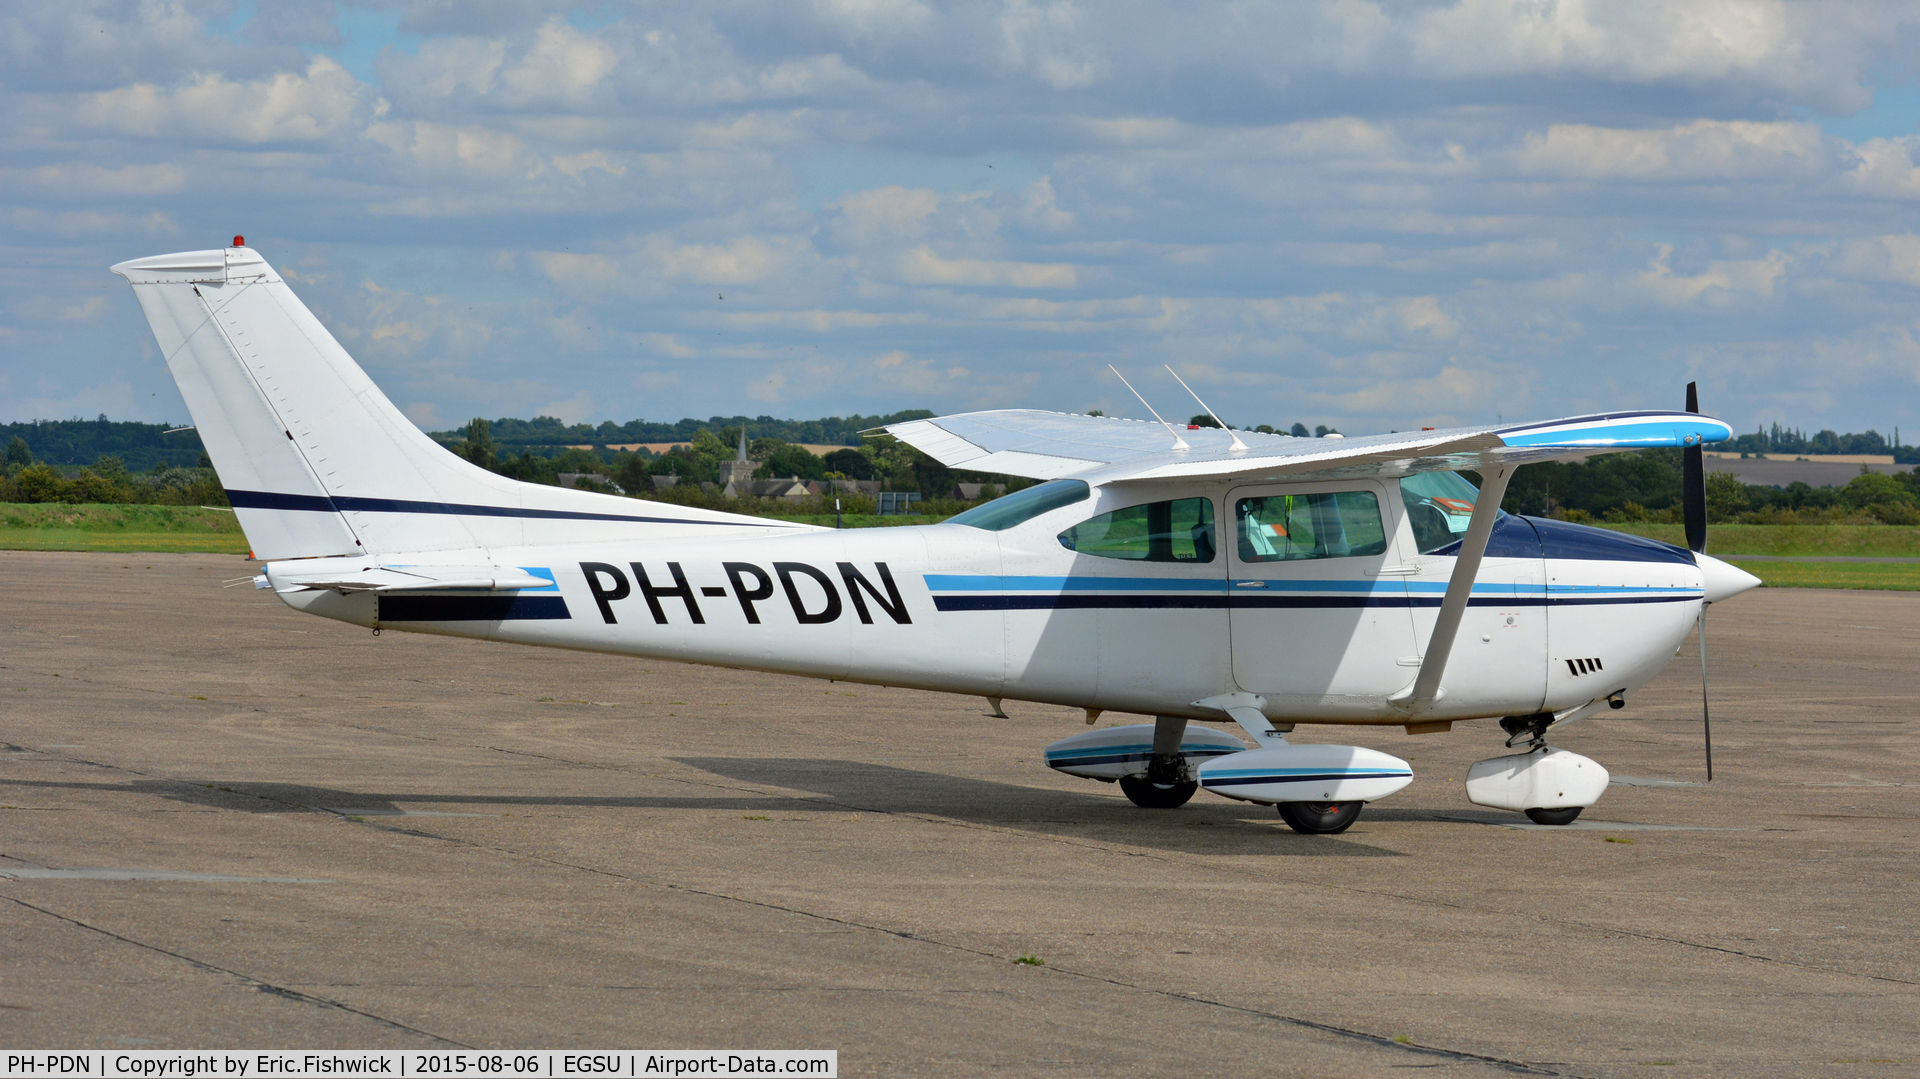 PH-PDN, 1974 Cessna 182P Skylane C/N 182-62694, 2. PH-PDN visiting Duxford Airfield, Aug. 2015.